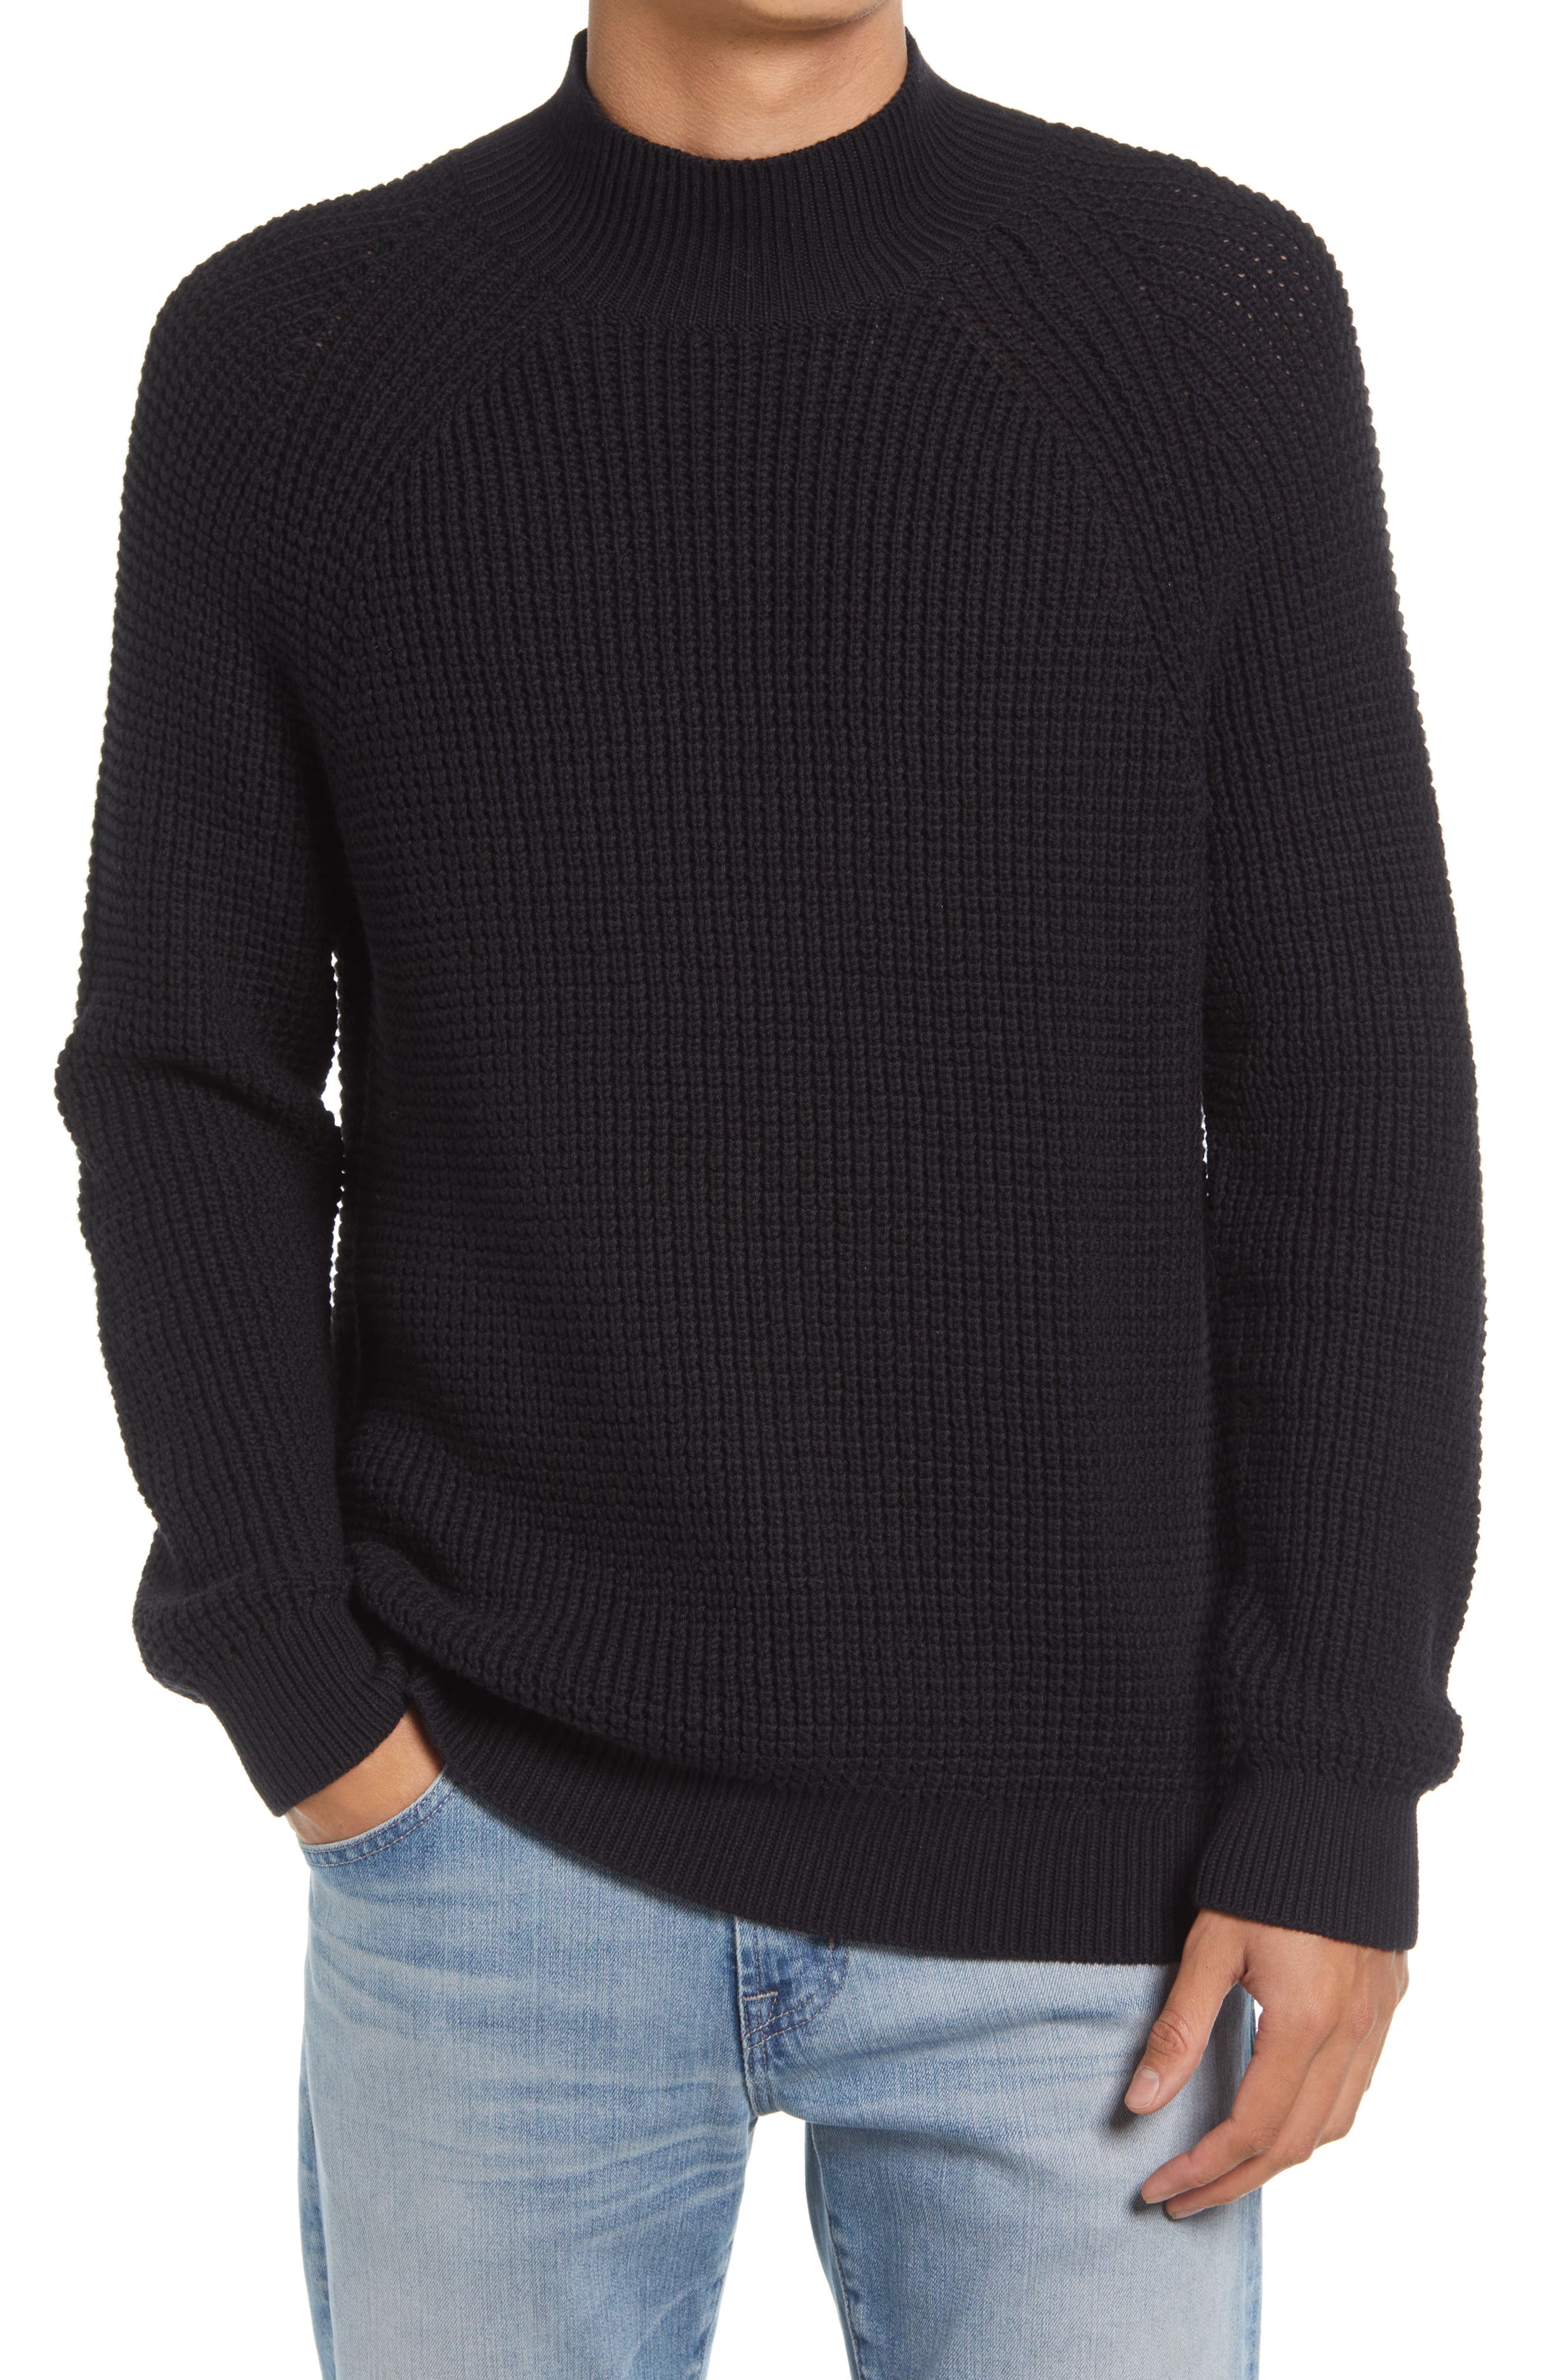 Luomingg Dimmu Borgir Mens Comfortable Sweaters Black 